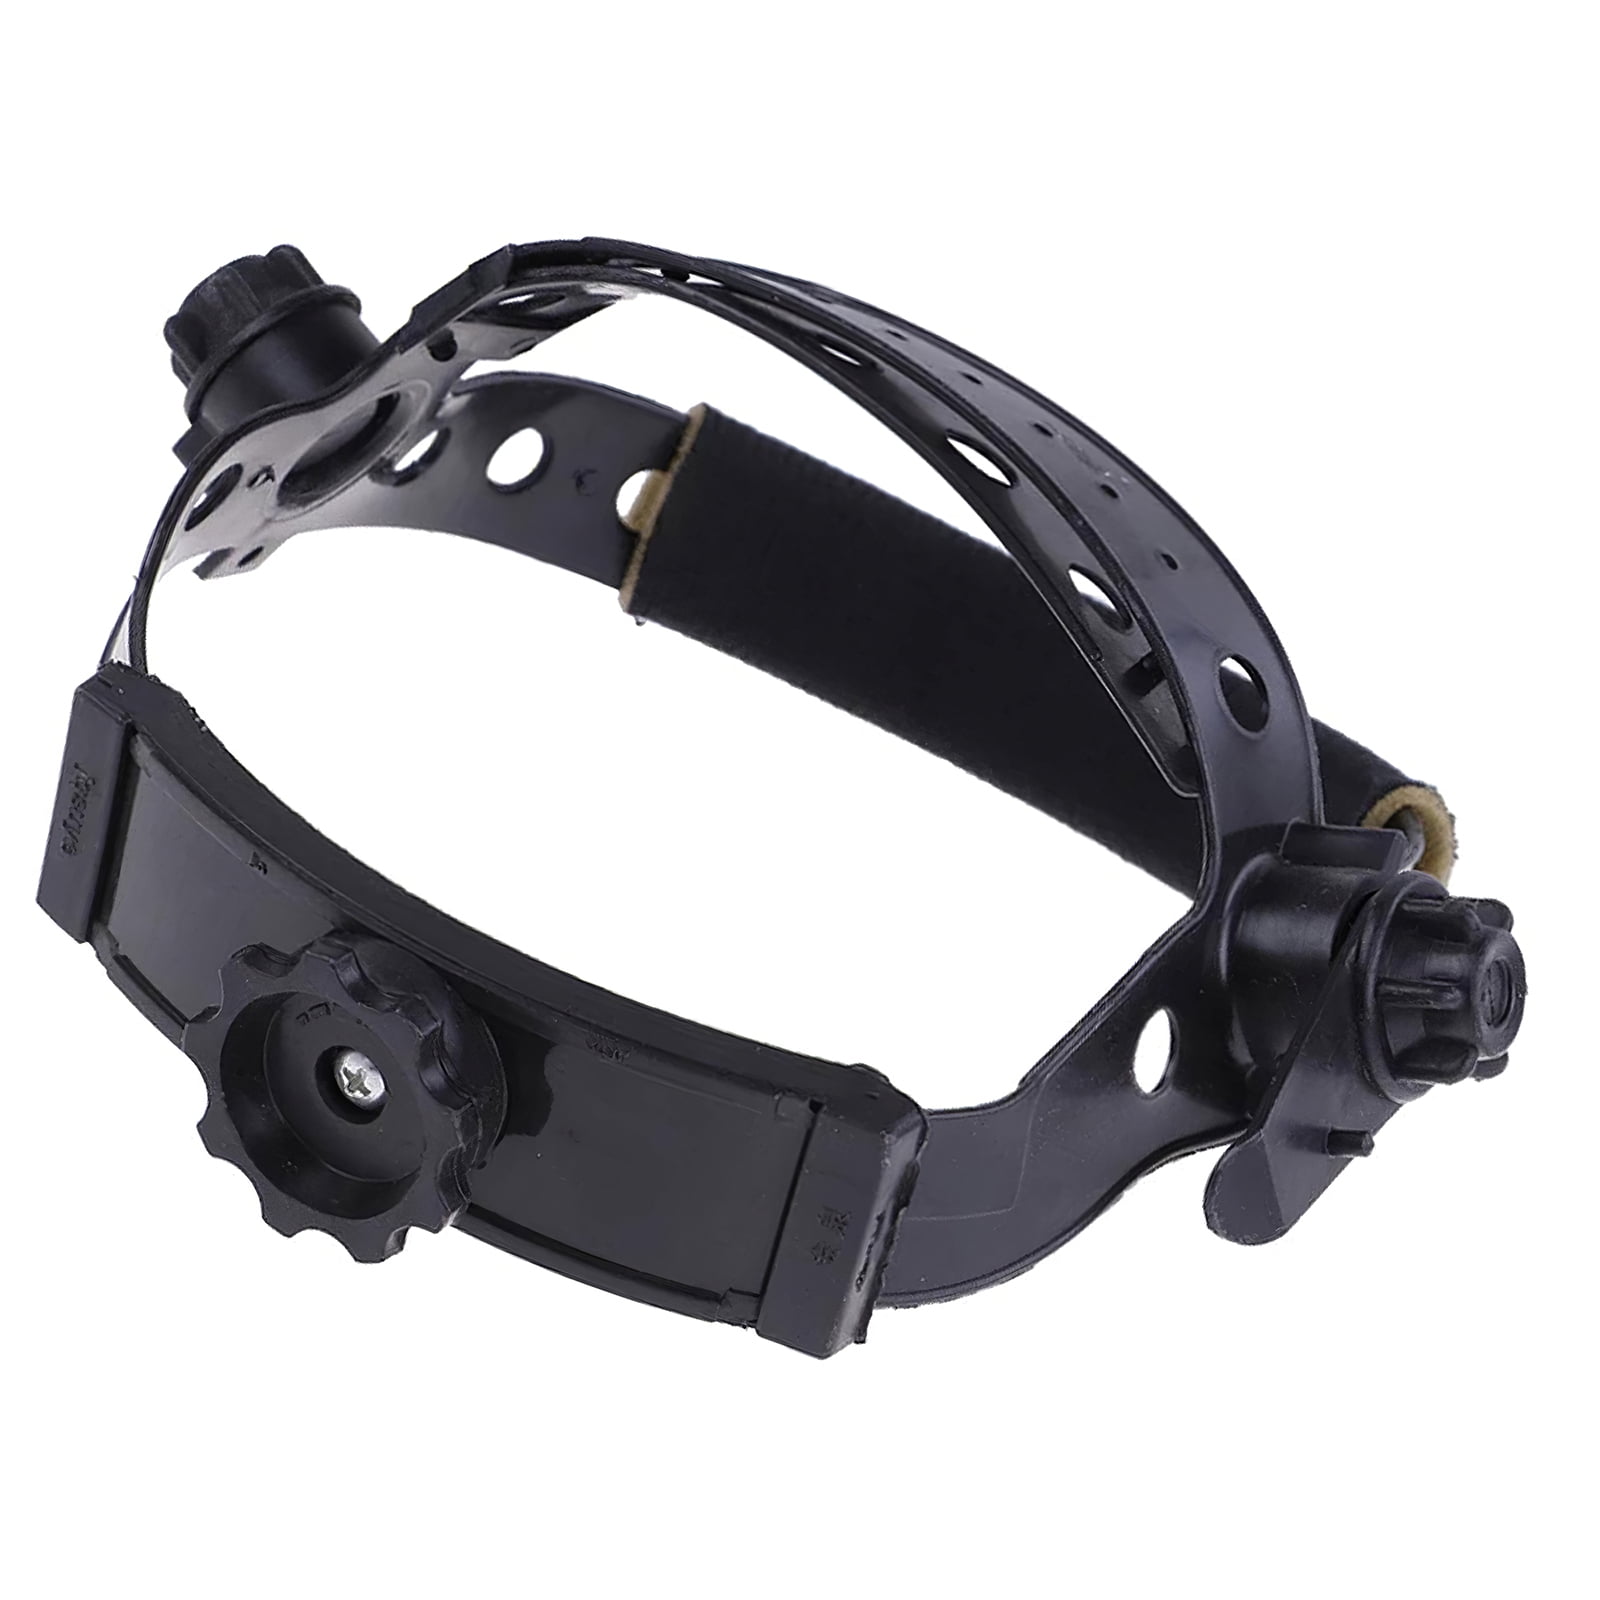 Welding Welder Mask Helmet Built-in Adjustable Headband for Solar Auto Darkening Welding Sweat-absorbing Headband Helmet Replacement Accessories Black 